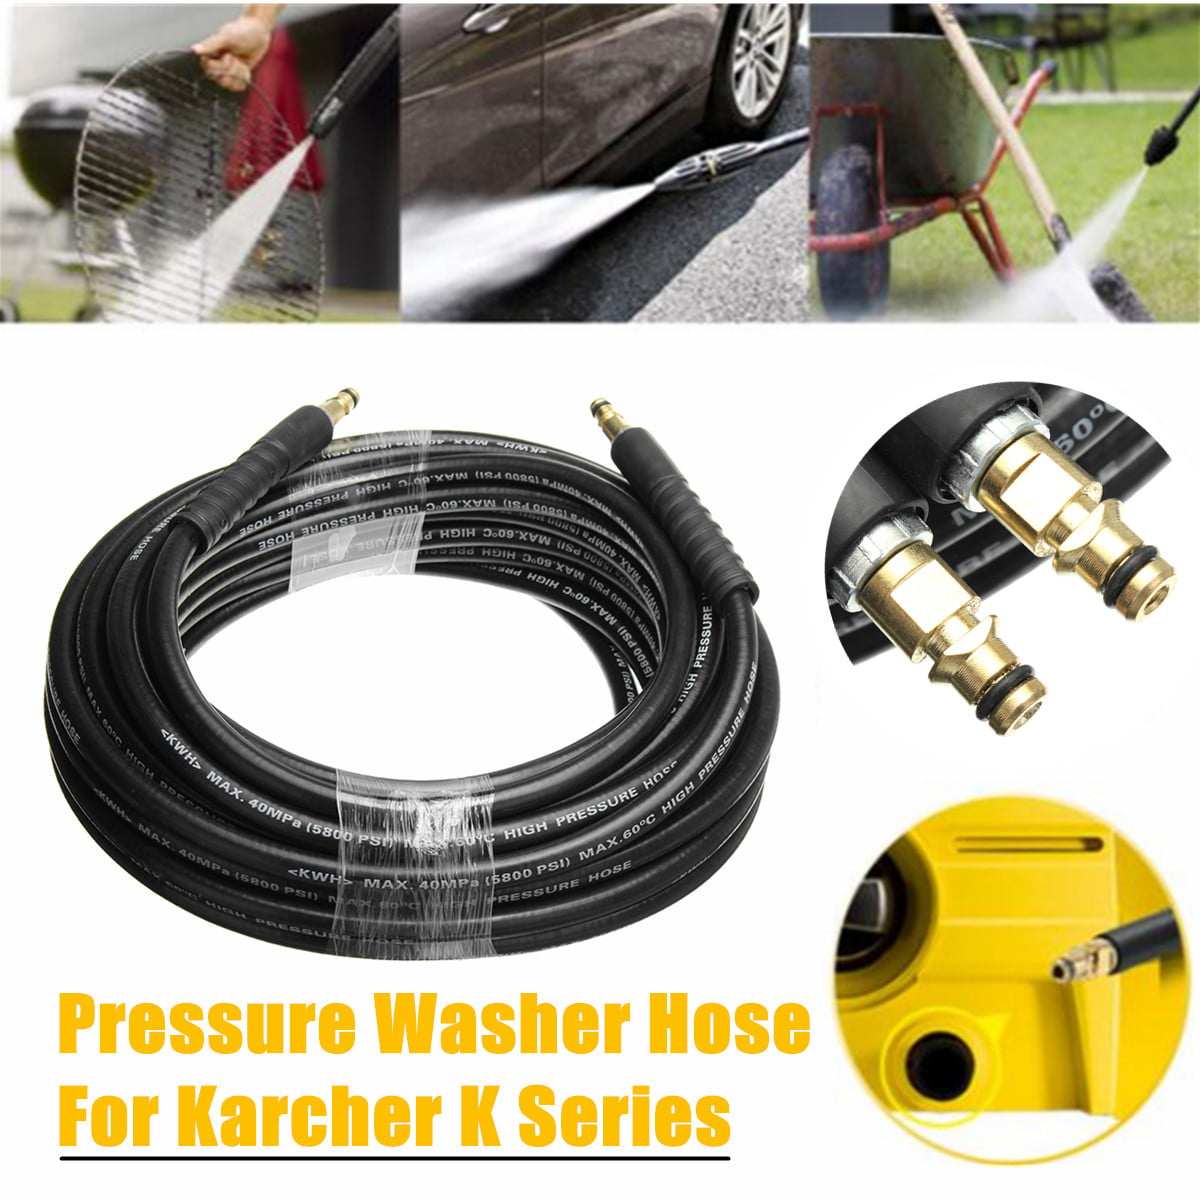 10M 15M High Pressure Washer Extension Hose For Karcher K2 K3 K4 K5 K7 K Series 